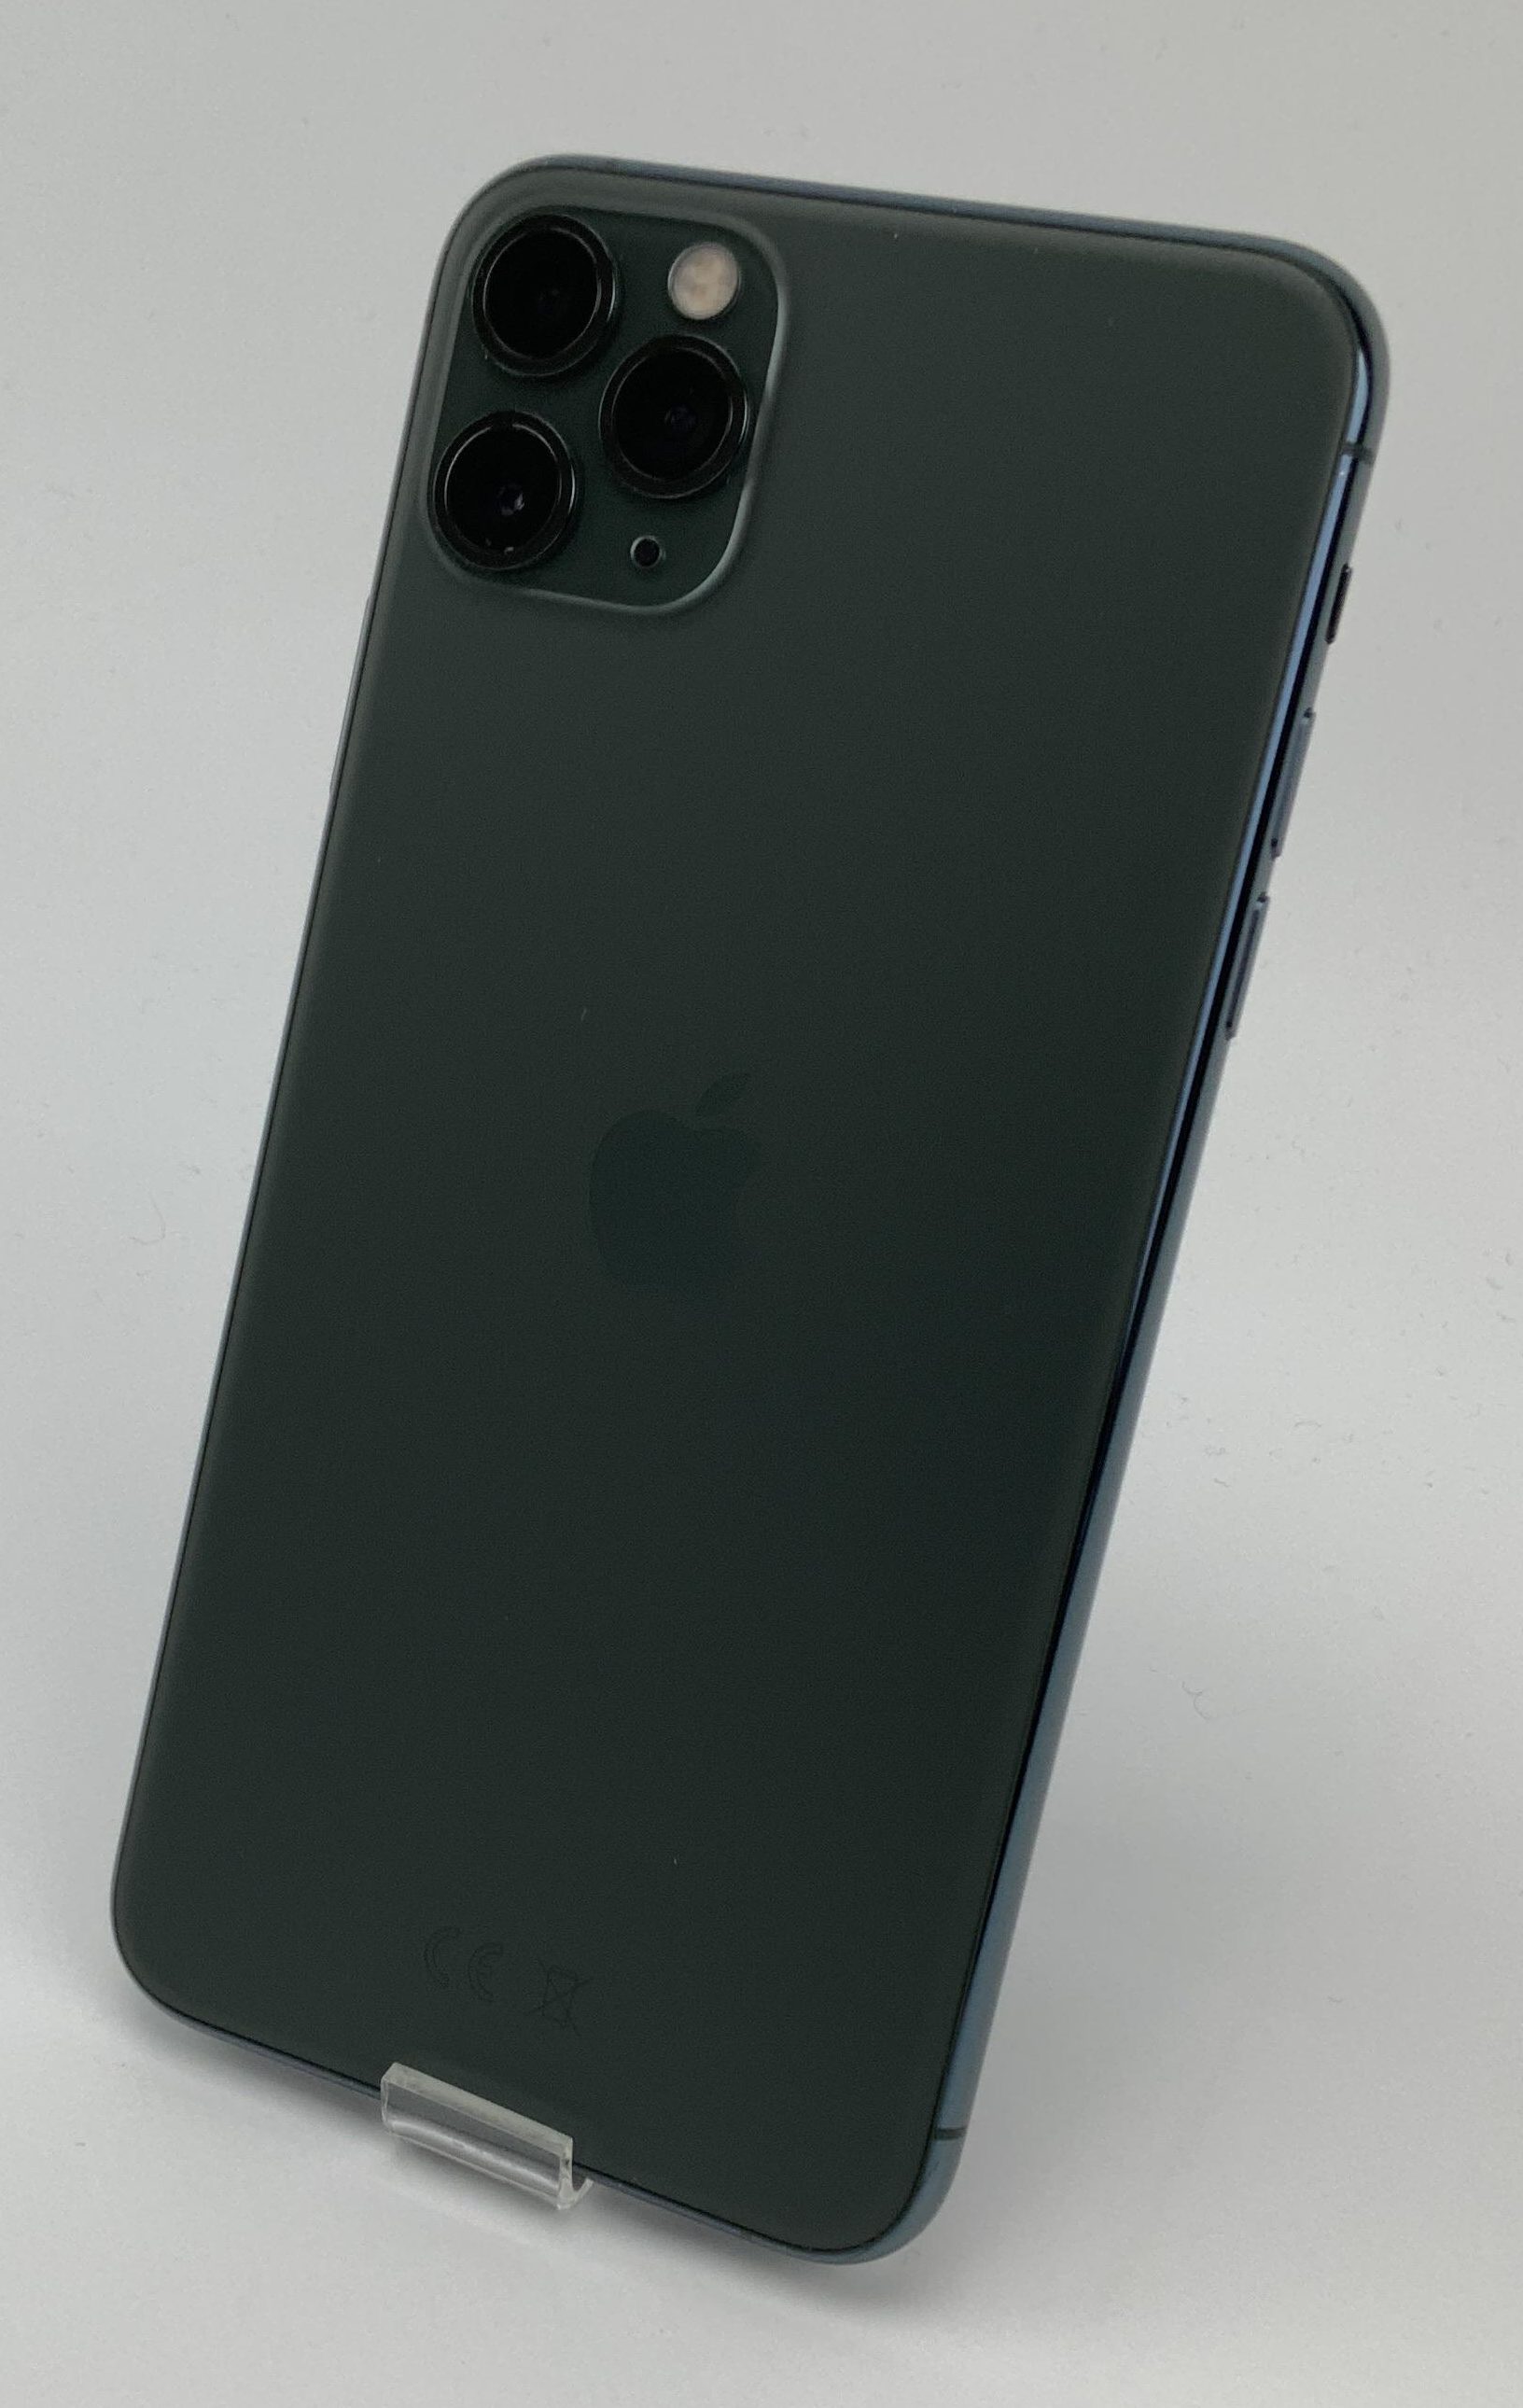 iPhone 11 Pro Max 256GB, 256GB, Midnight Green, immagine 2